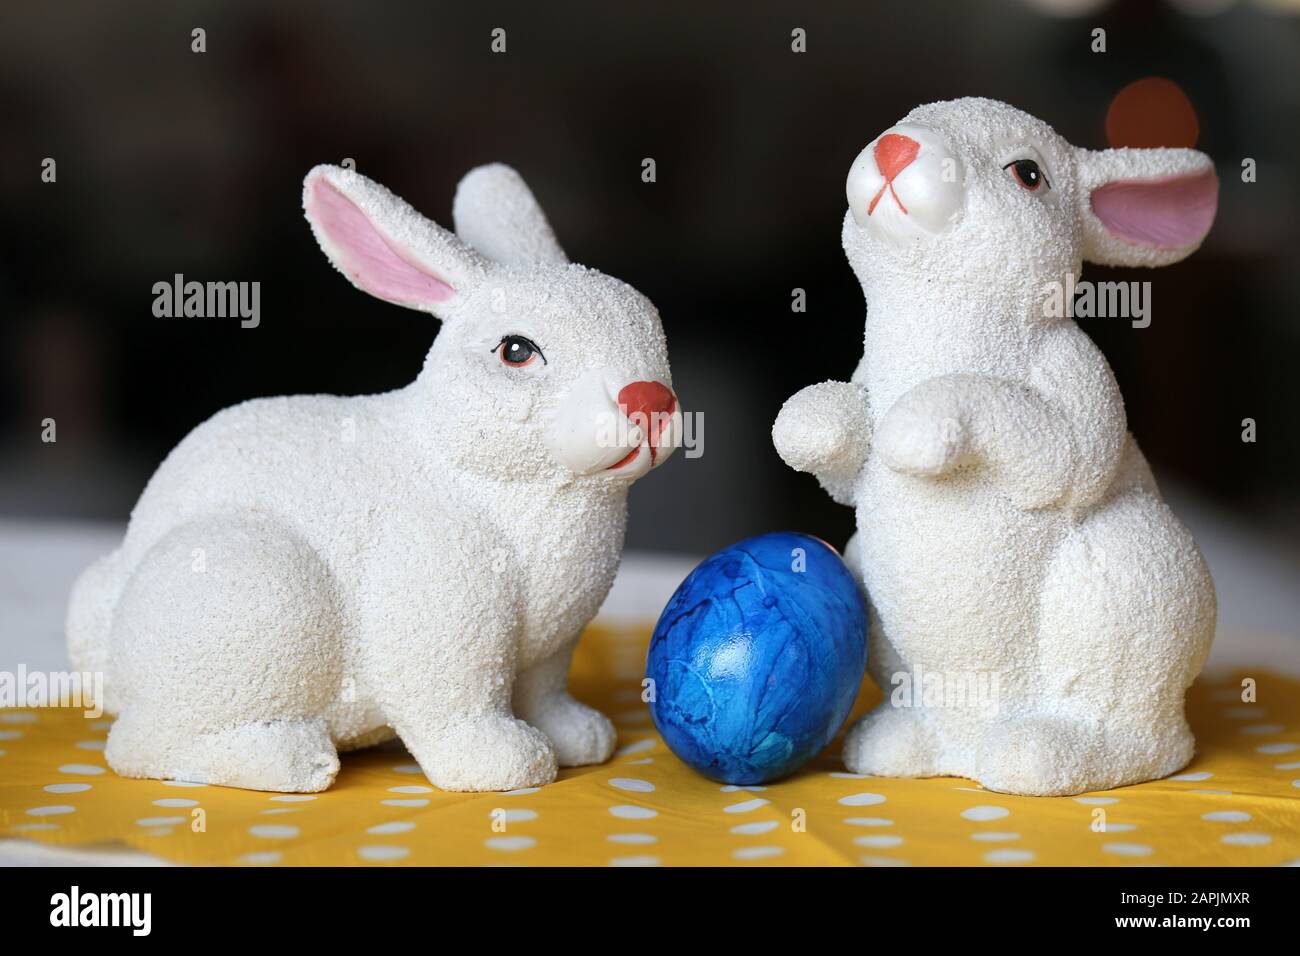 Des décorations de Pâques colorées et joyeuses sur une table. Gros plan image couleur de deux lapins de Pâques en céramique et des œufs de Pâques peints colorés. Banque D'Images